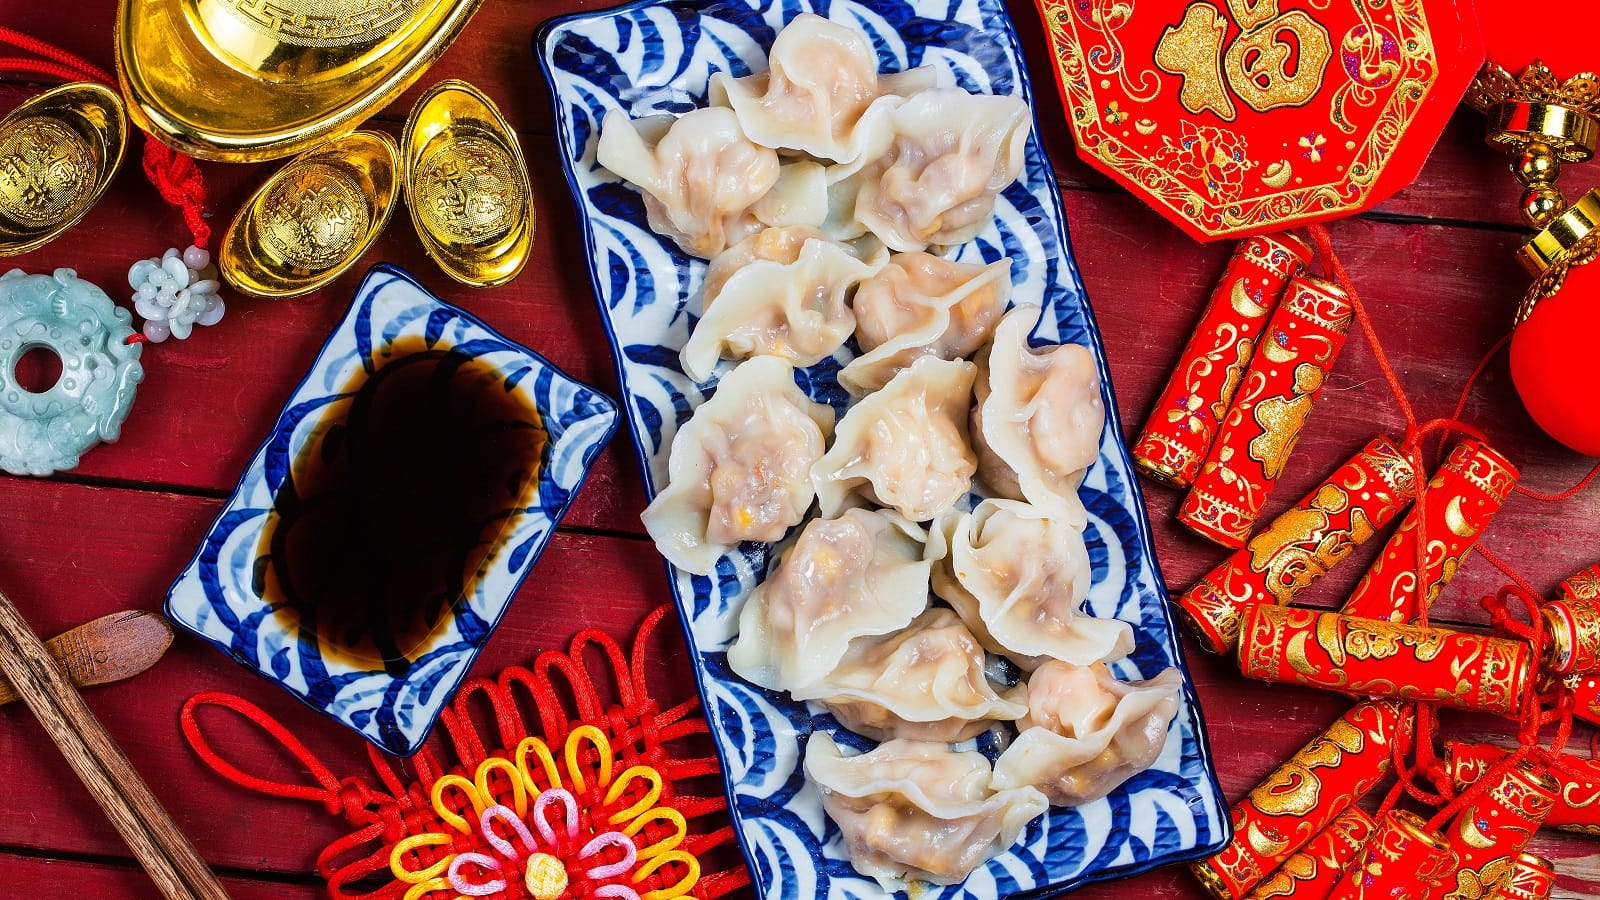 Viele Jiaozi, traditionell chinesische Dumplings auf einem langen Teller angerichtet, neben einer passenden Schale mit Sauce, und vieler roten Neujahrsdekoration vor einem roten Hintergrund, von oben.